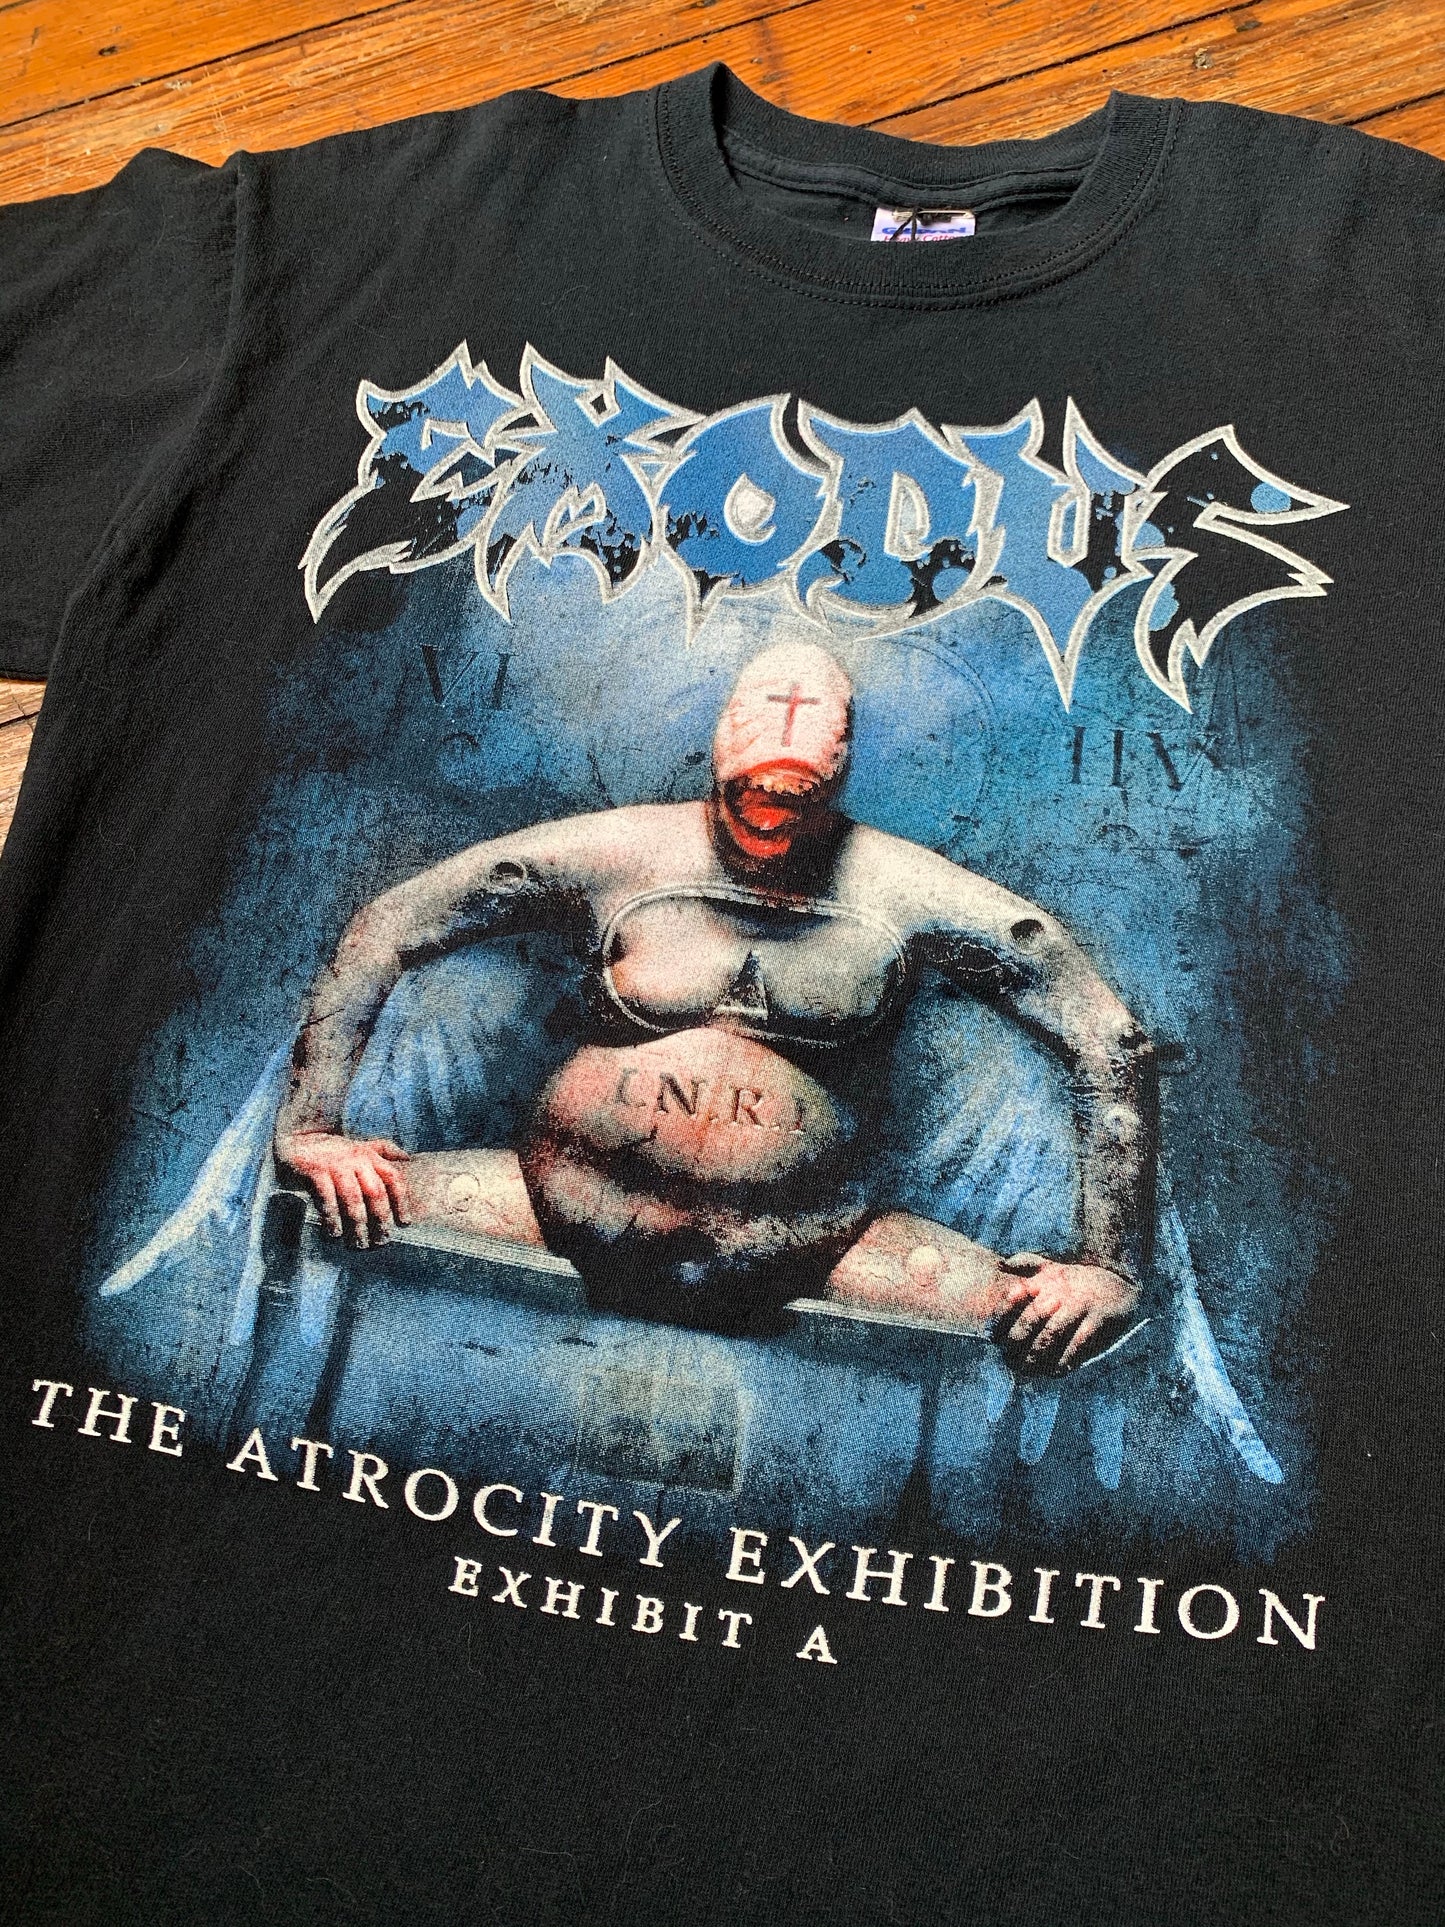 Pre-Loved Exodus 2008 The Atrocity Exhibition...Exhibit A Tour T-Shirt